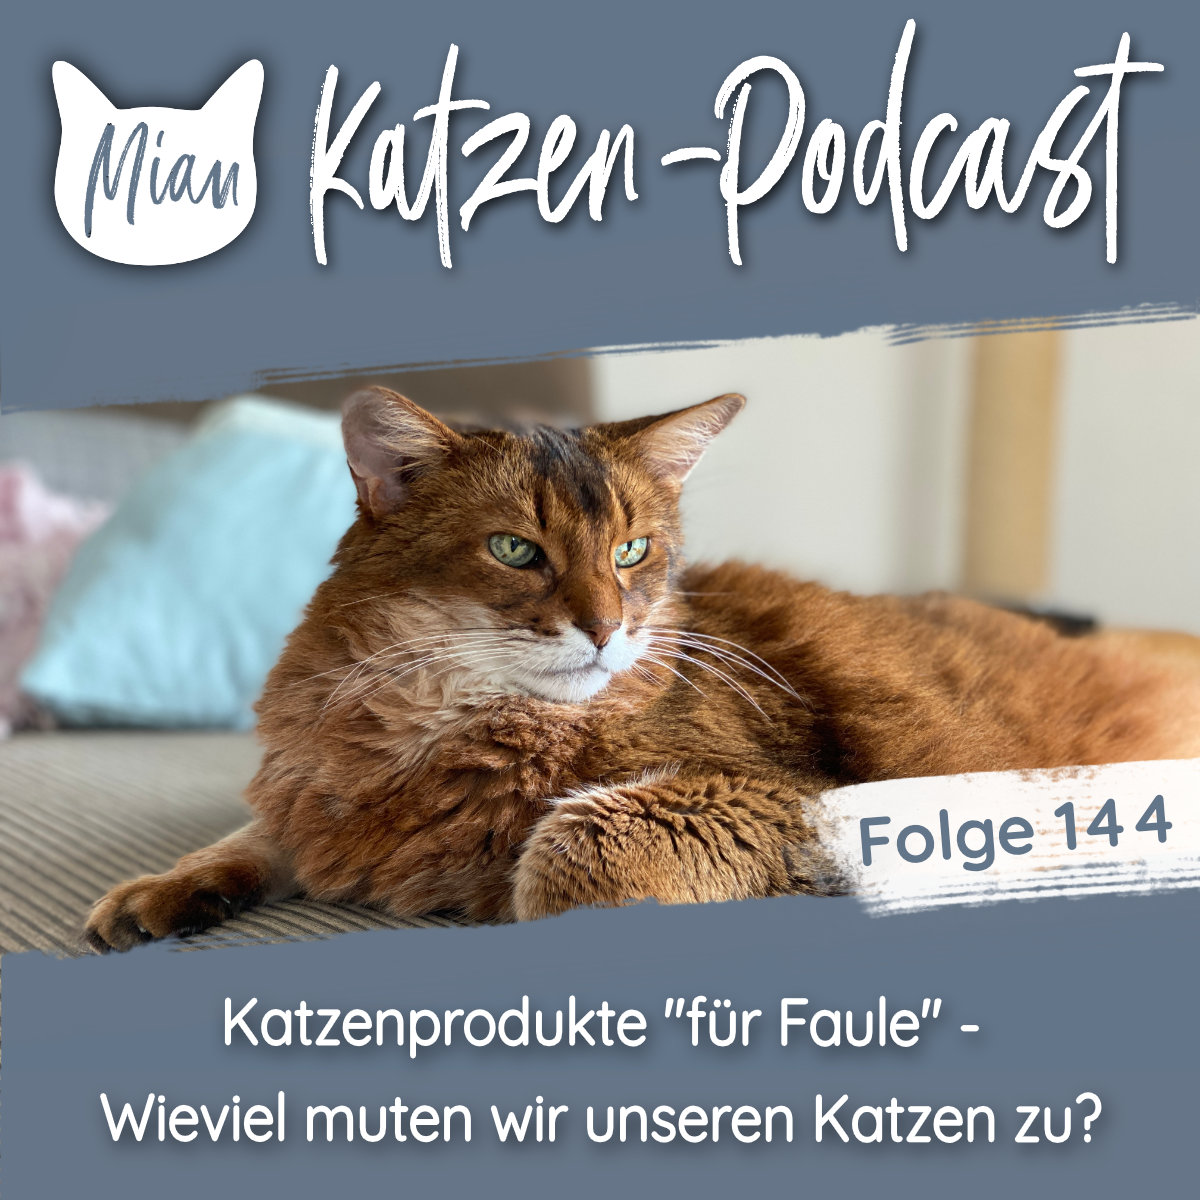 Katzenprodukte ”für Faule” - Wieviel muten wir unseren Katzen zu? | MKP144